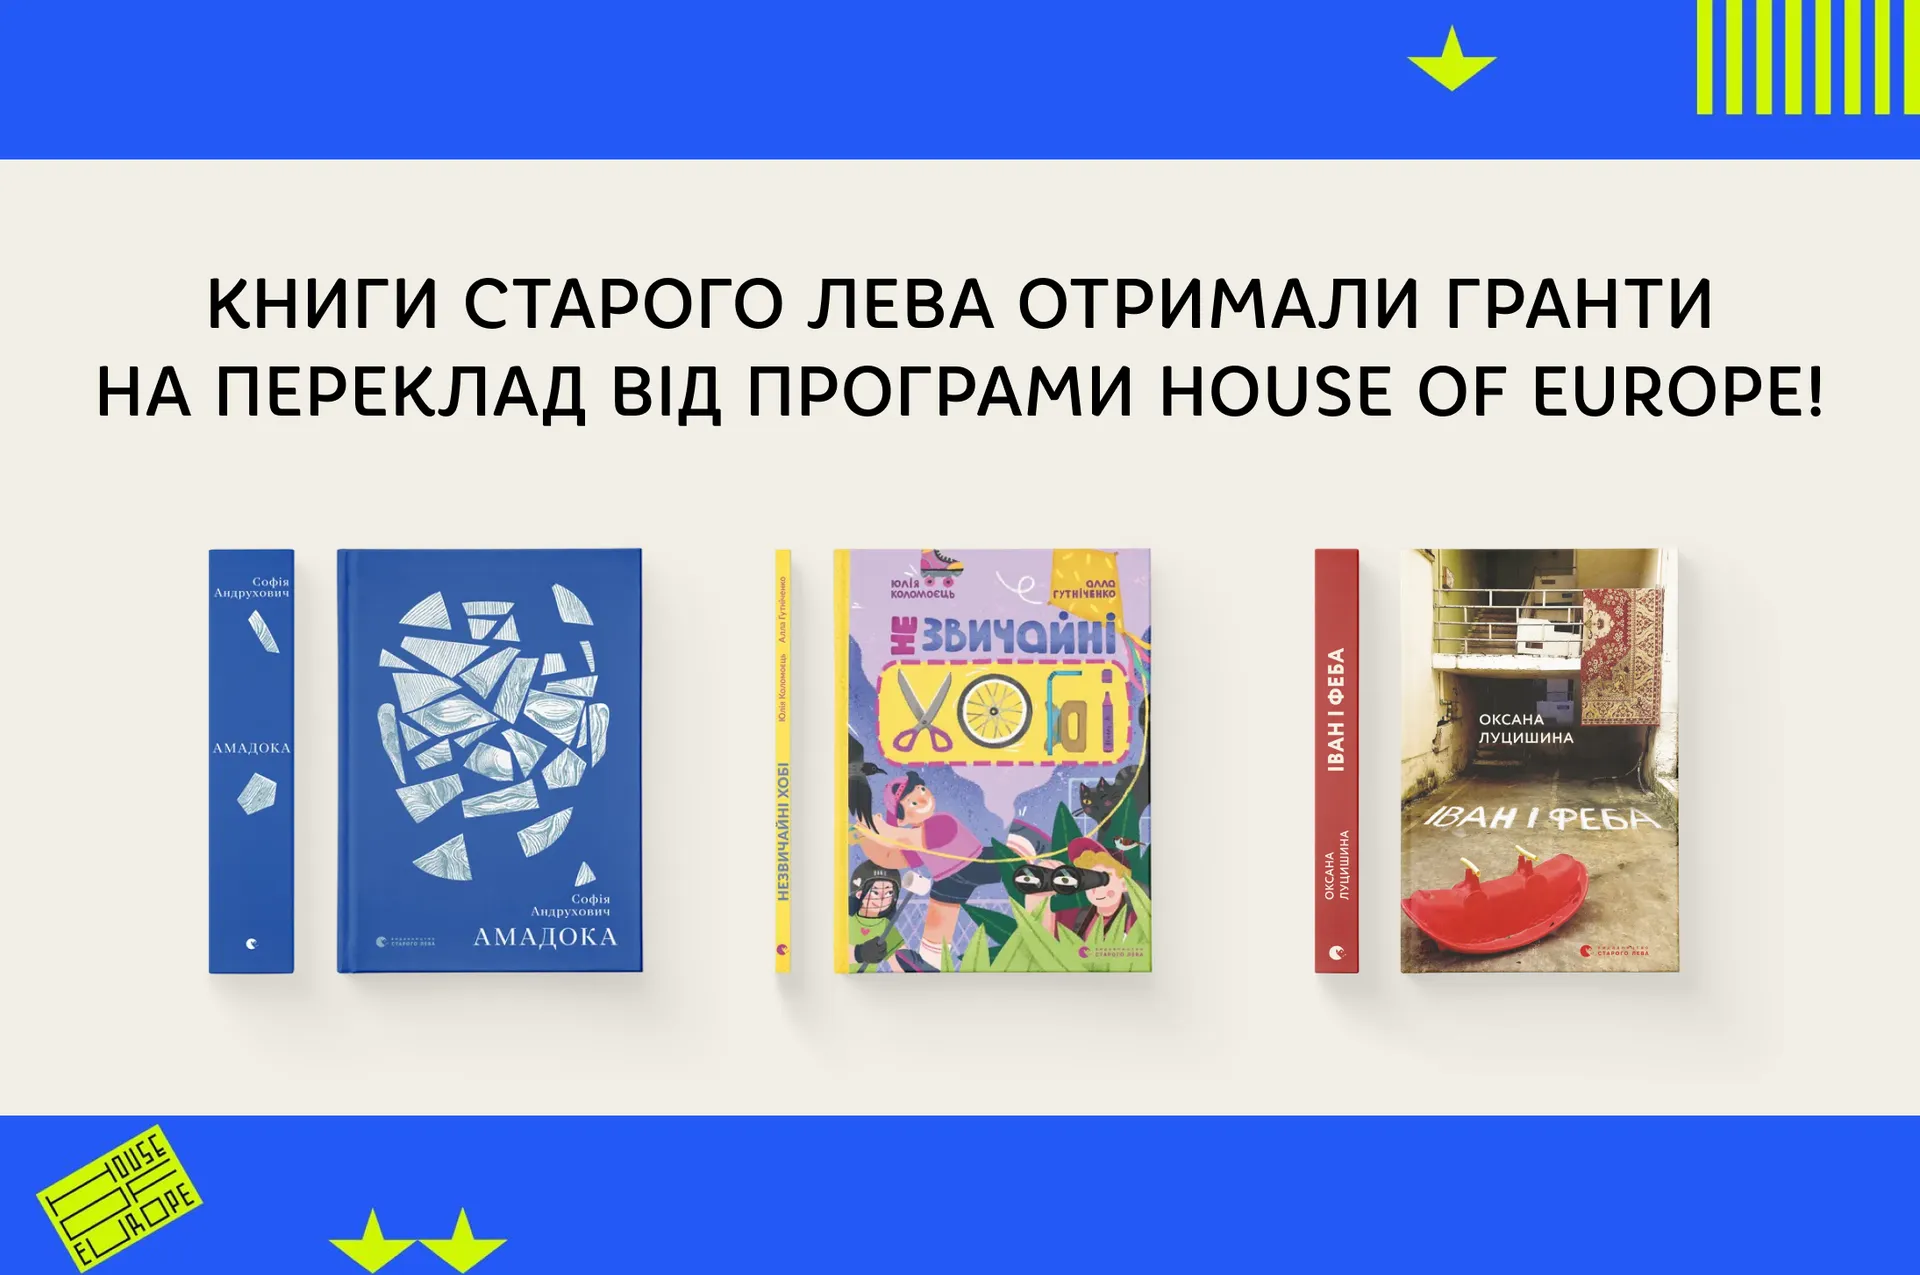 Книги Старого Лева отримали гранти на переклад від програми House of Europe!